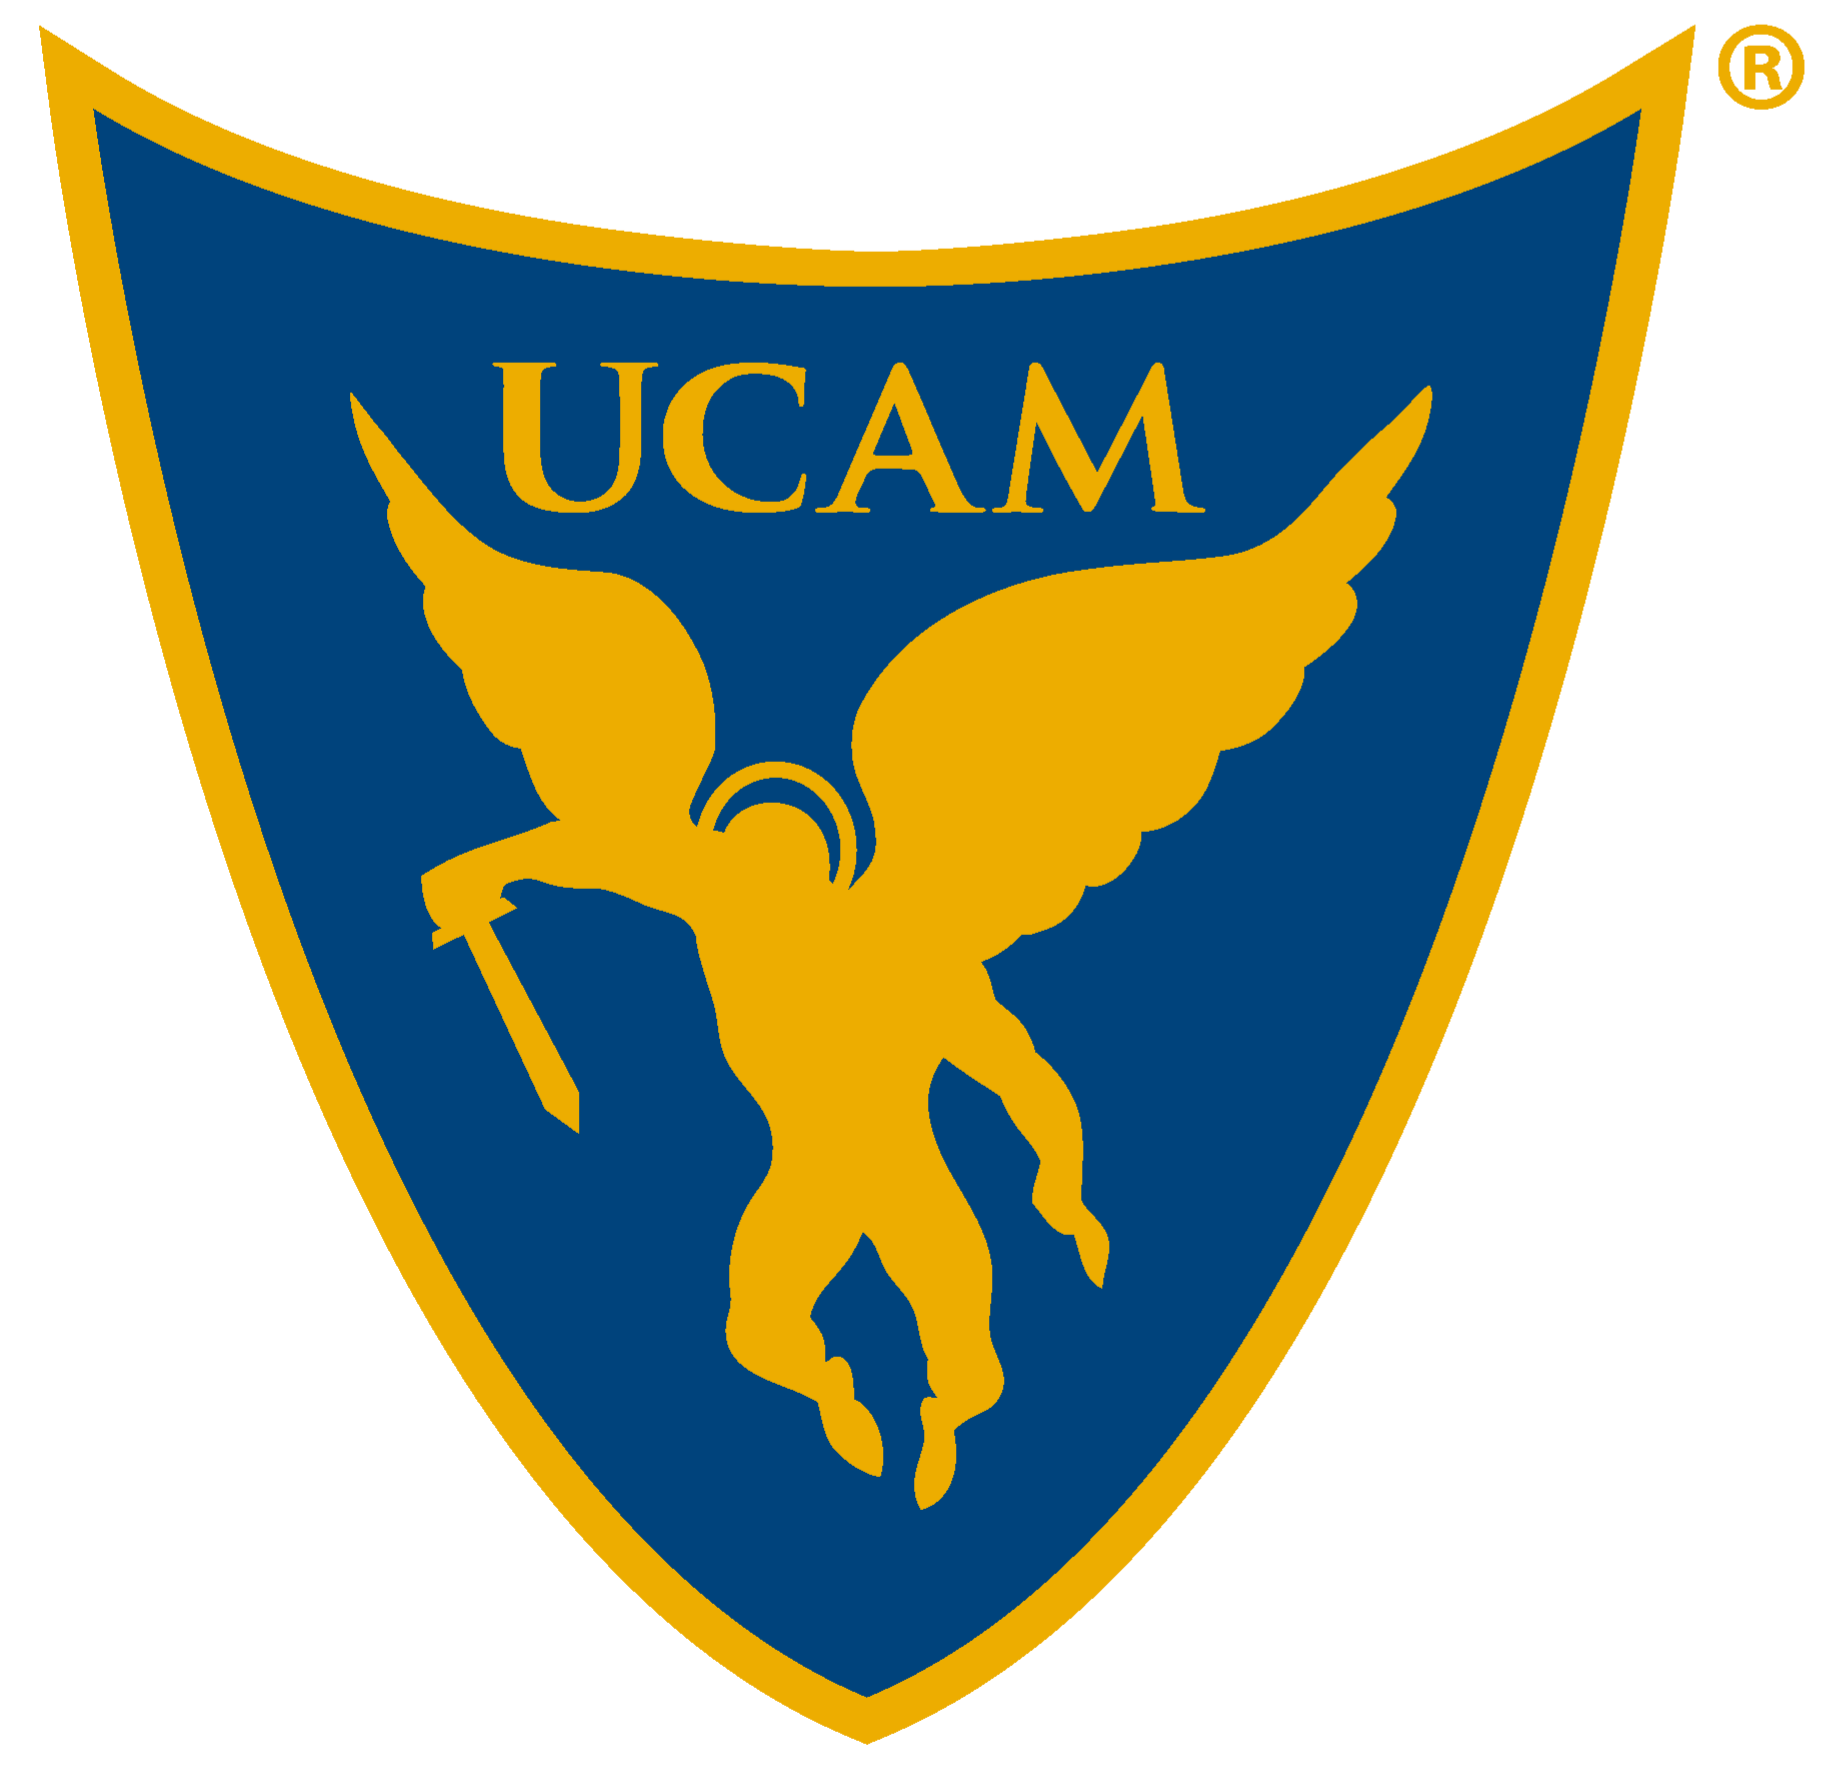 UCAM Esports